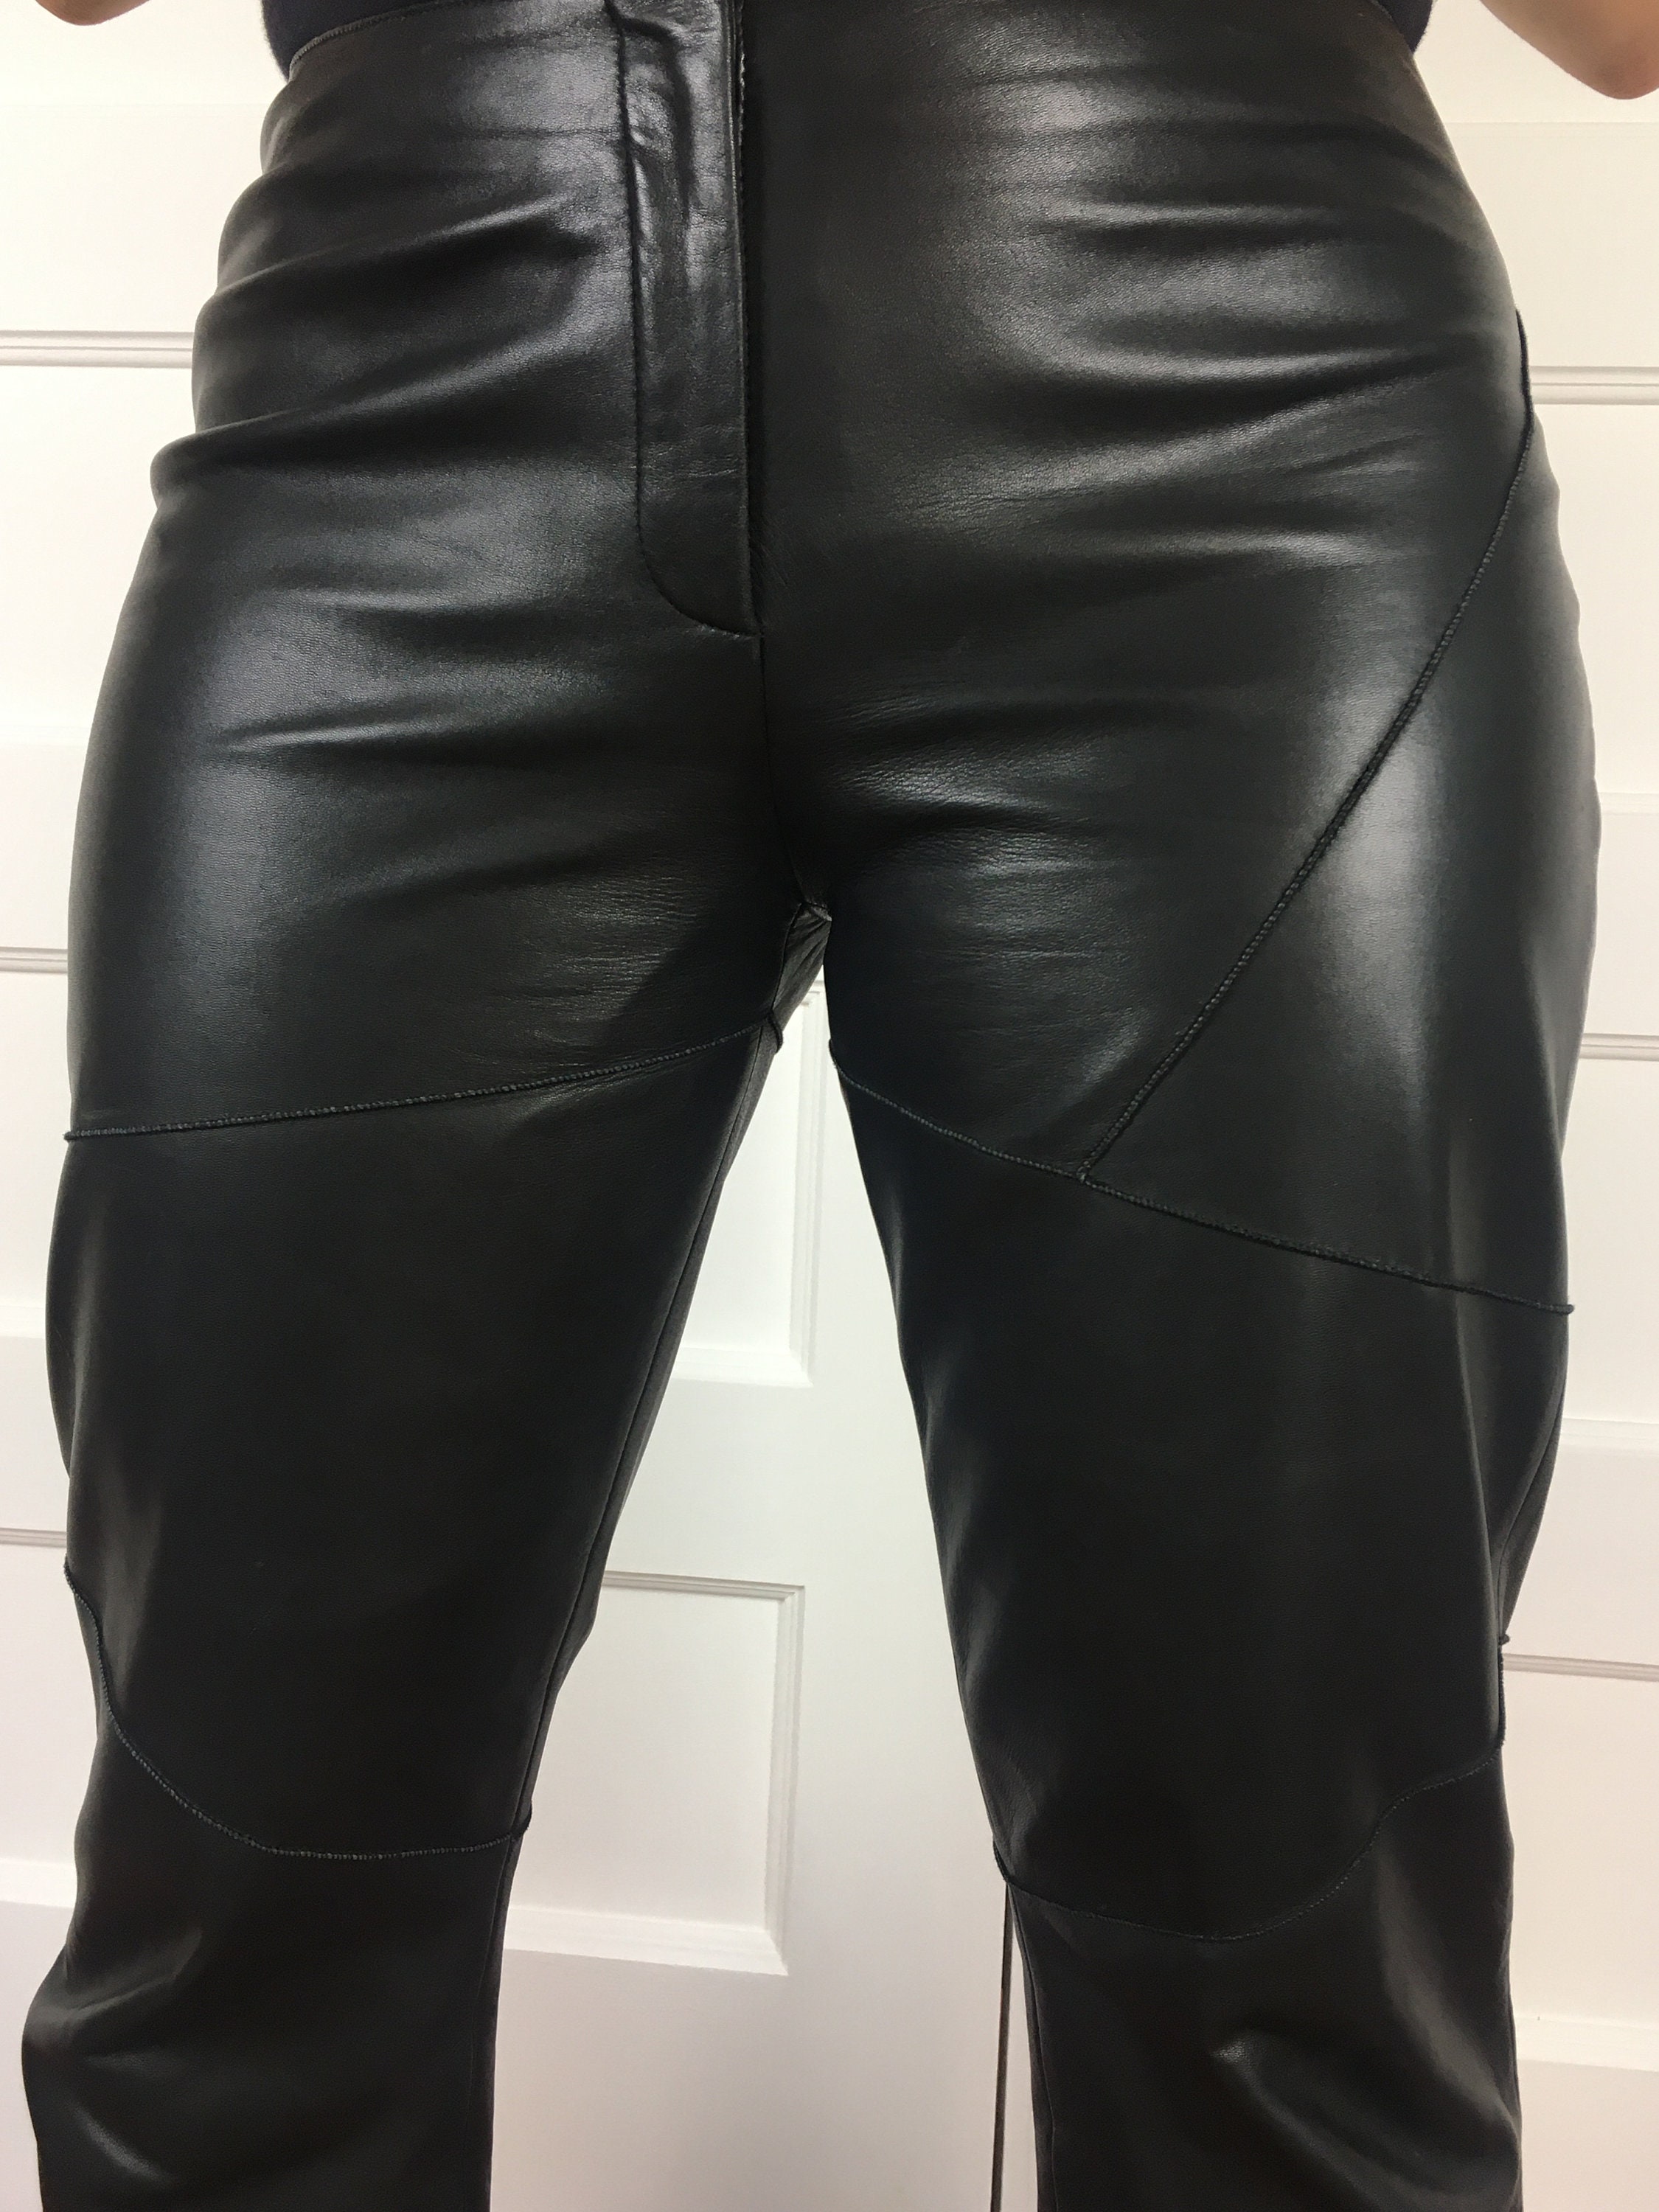 Black Lululemon Leggings with side pockets and sheer - Depop